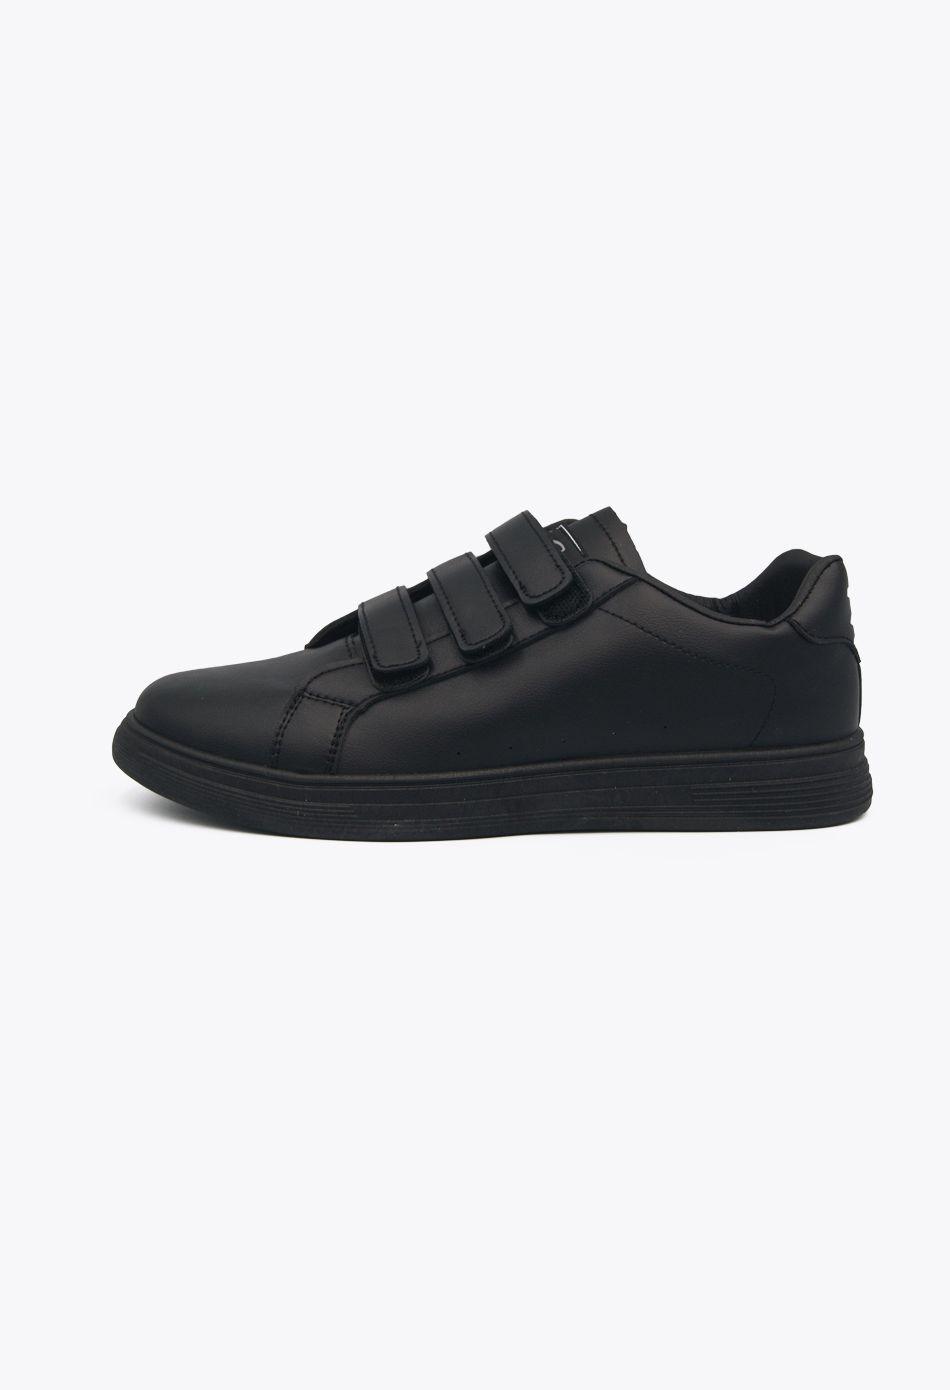 Ανδρικά Casual Sneakers με Scratch μαύρο / A62-black ΑΘΛΗΤΙΚΑ & SNEAKERS joya.gr